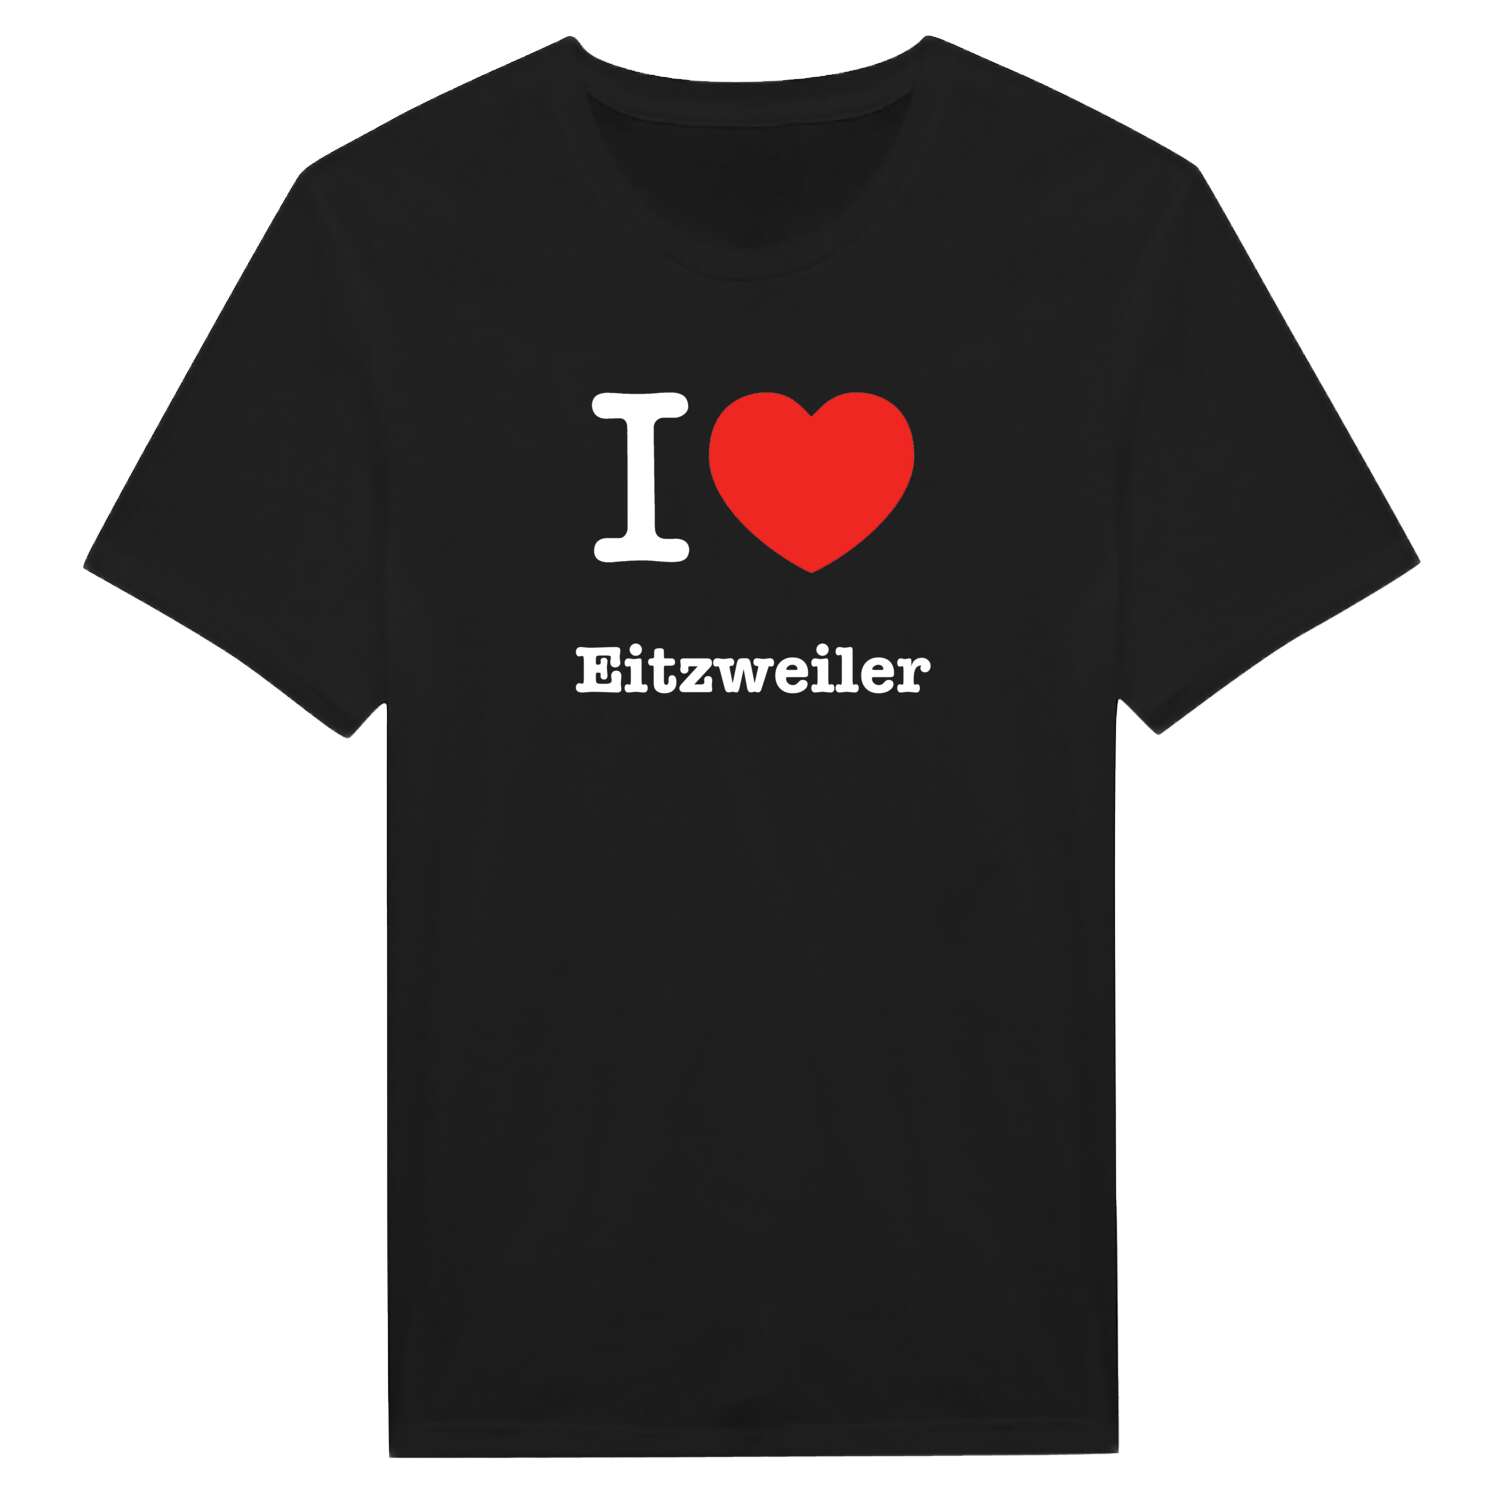 Eitzweiler T-Shirt »I love«